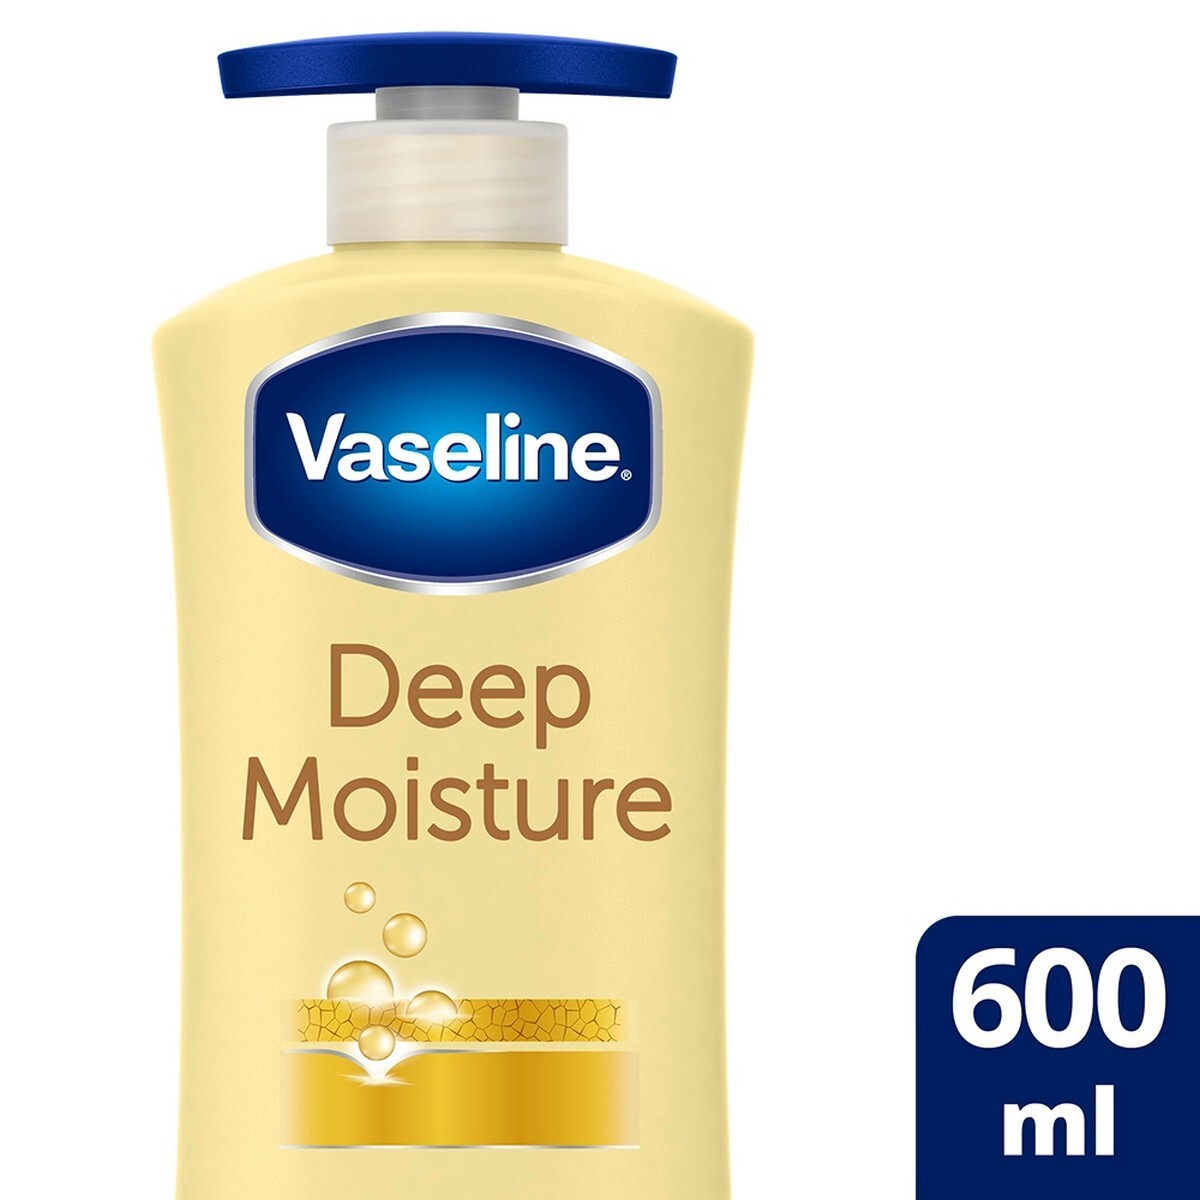 Vaseline Deep Moisture Serum In Lotion - For Dry Skin, 600 Ml